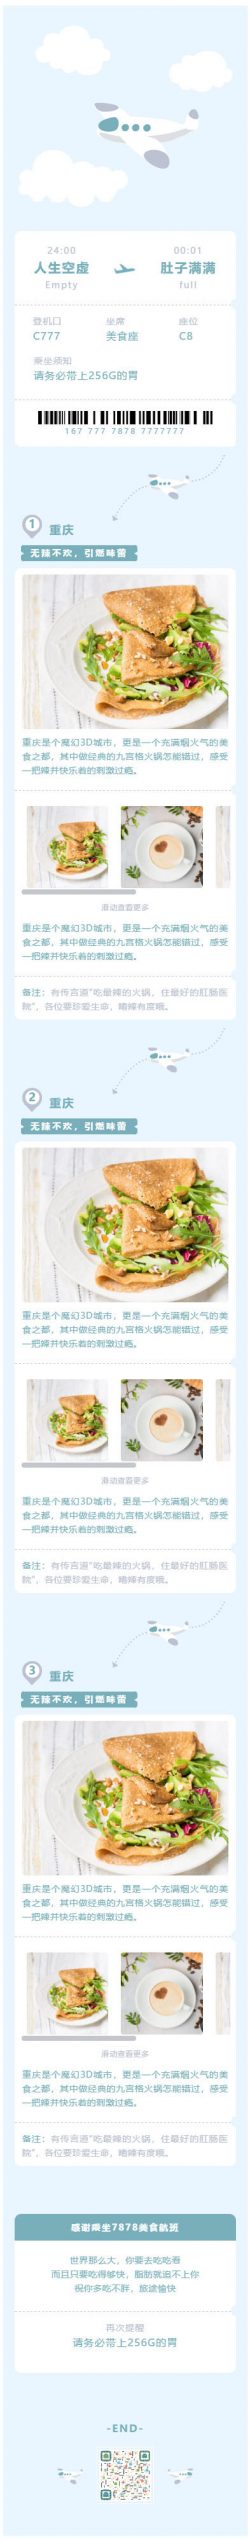 重庆旅游旅行蓝色清新风格左右滑动微信模板公众号美食推文